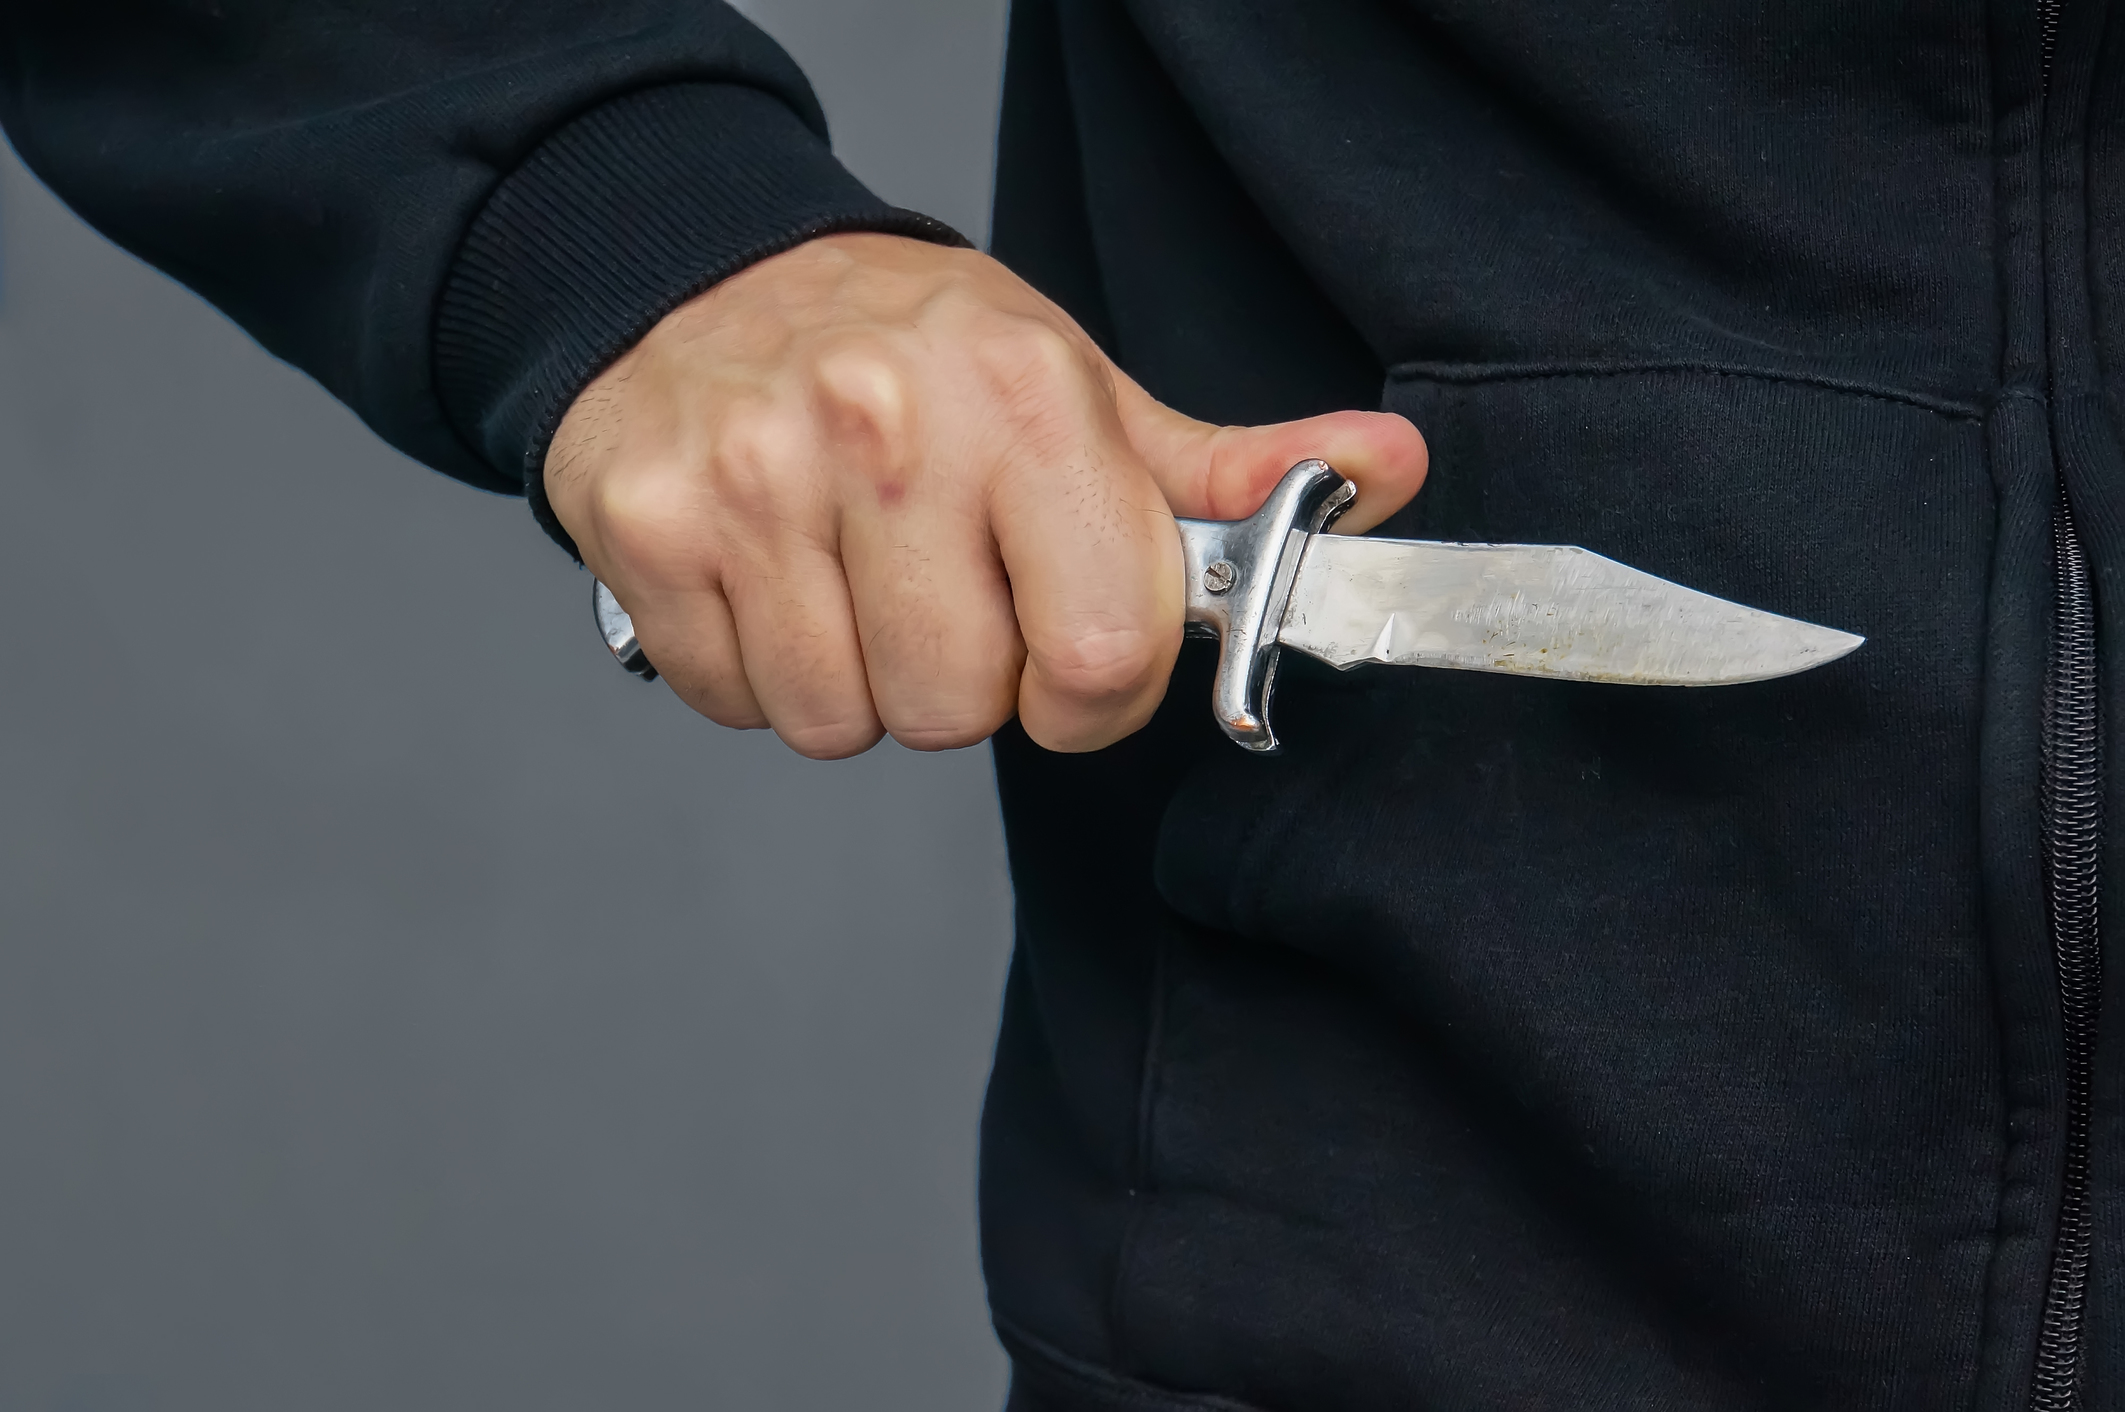 Késsel fenyegetőzve követelte a bevételt egy zöldséges üzletben egy férfi -  Blikk